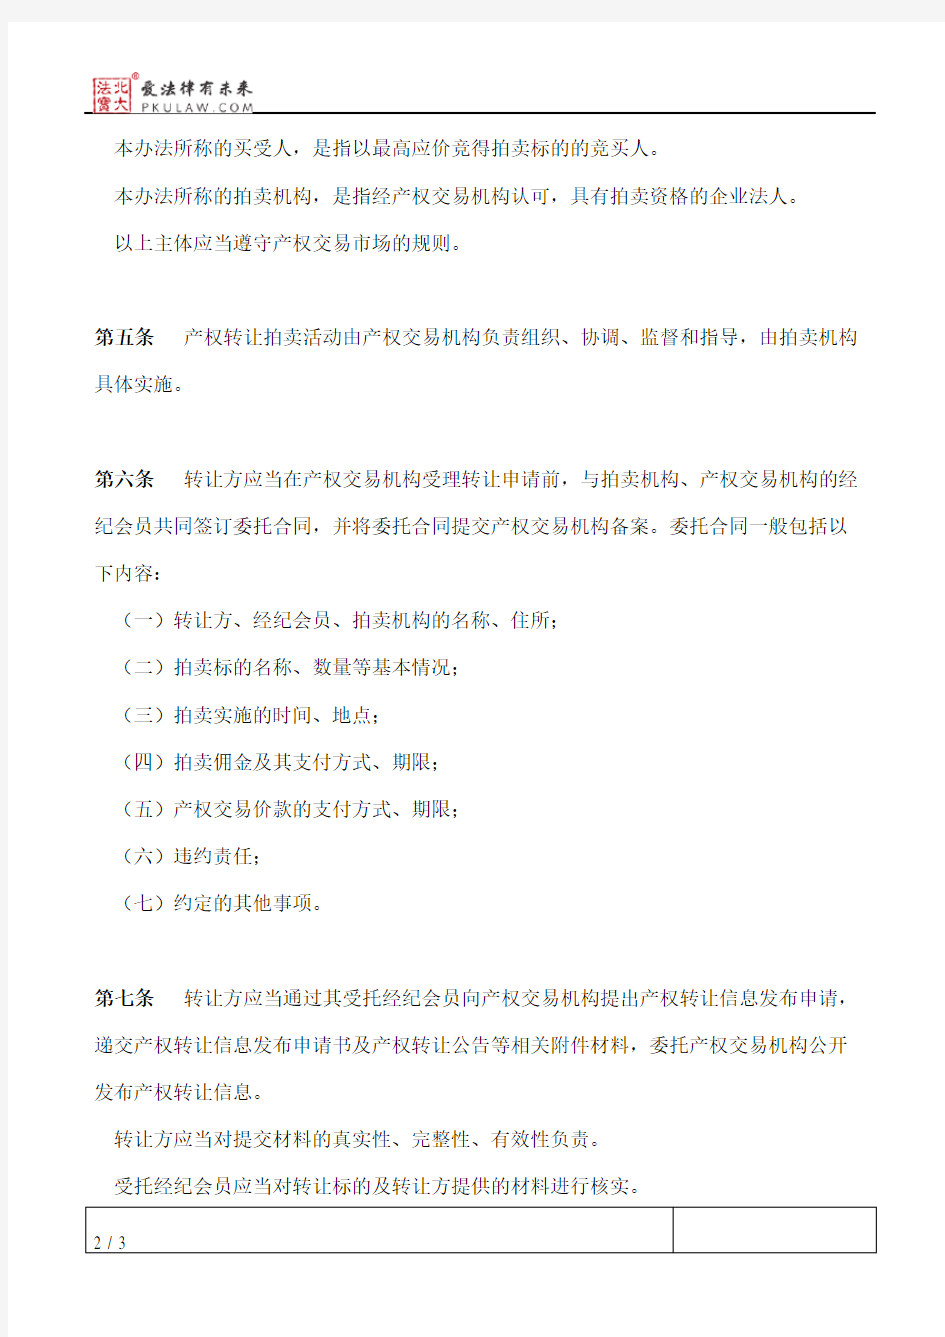 上海联合产权交易所企业国有产权转让拍卖实施办法